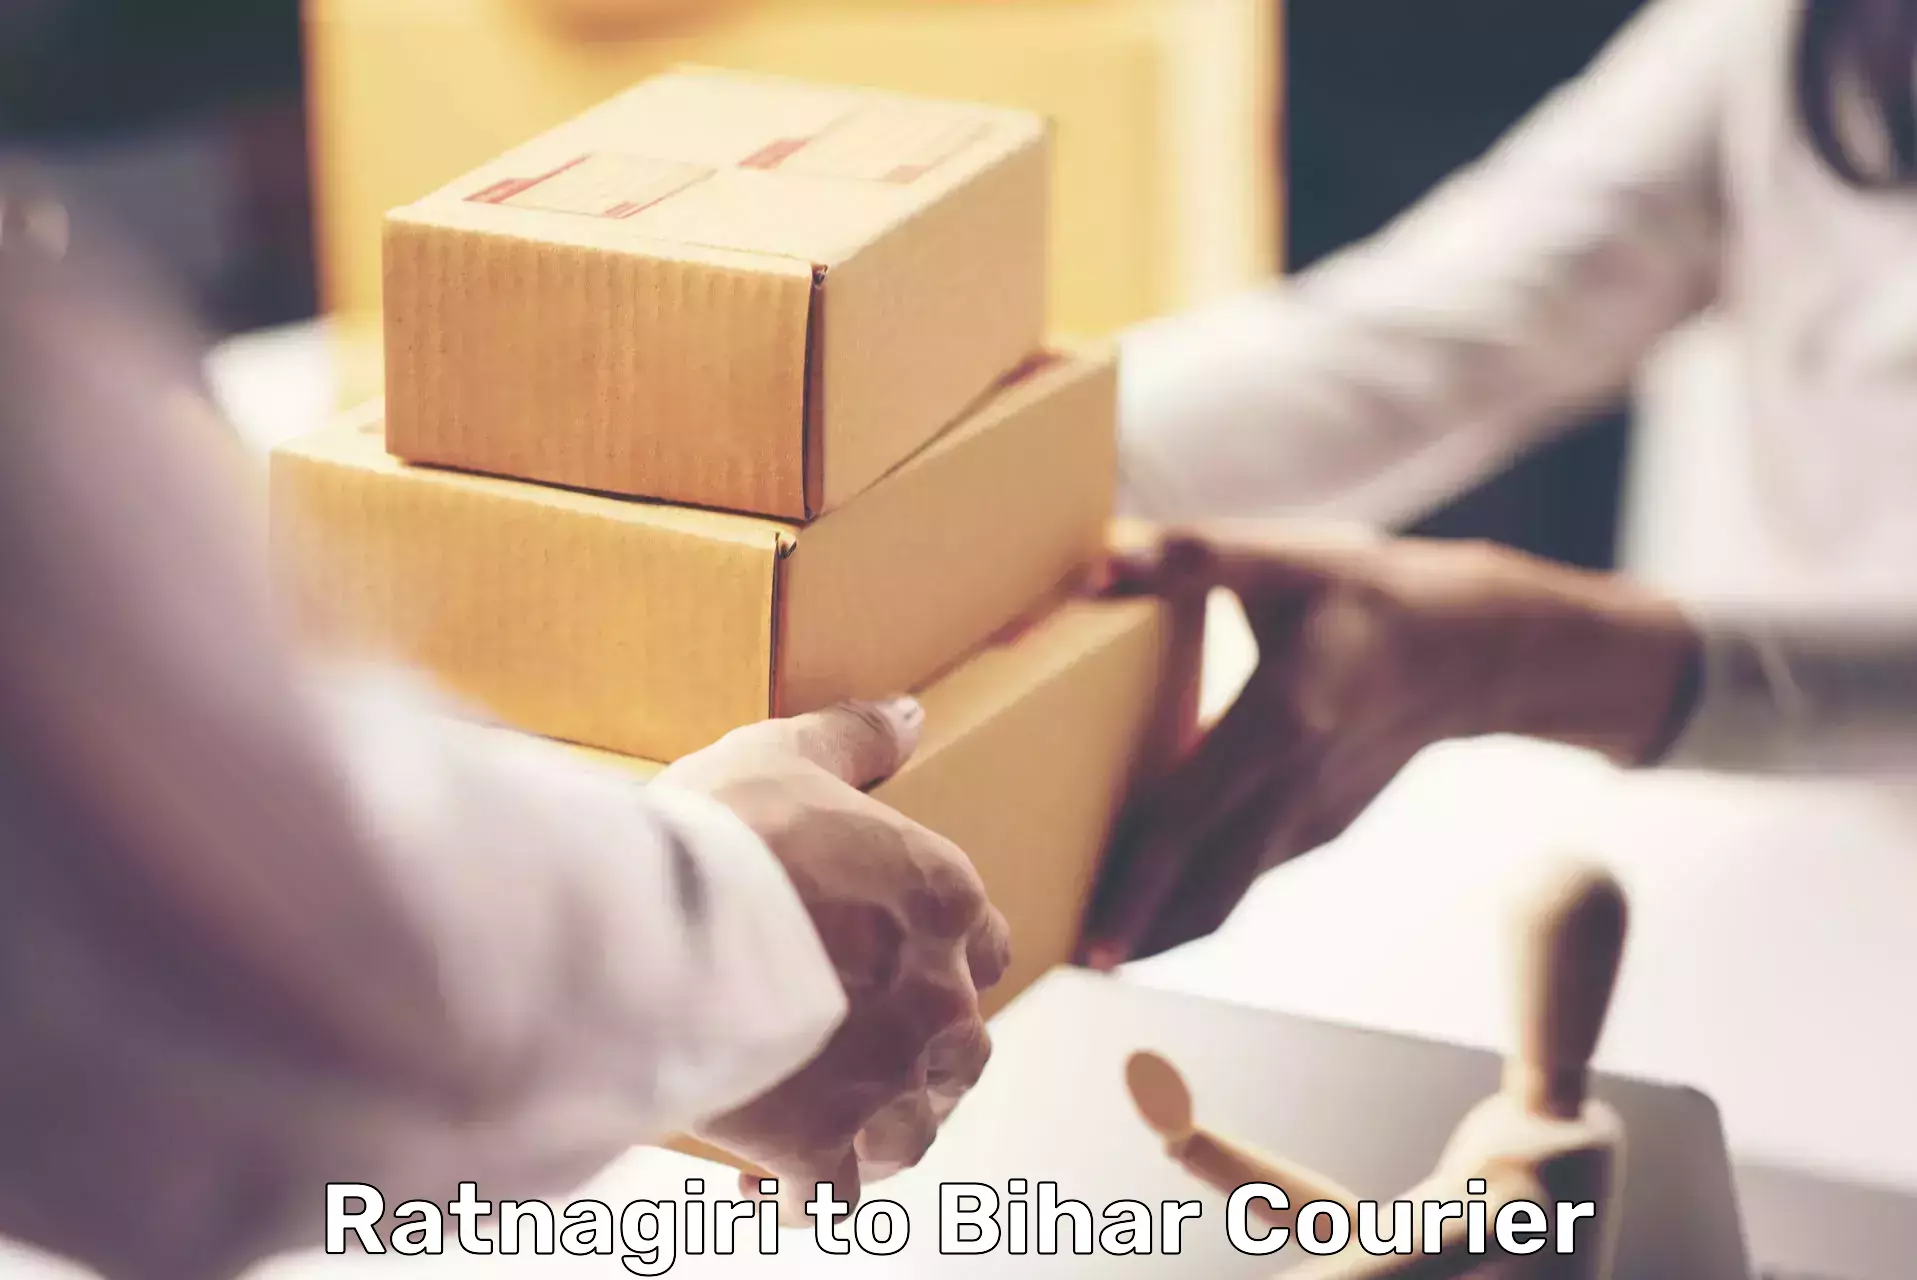 Express mail service Ratnagiri to Bihar